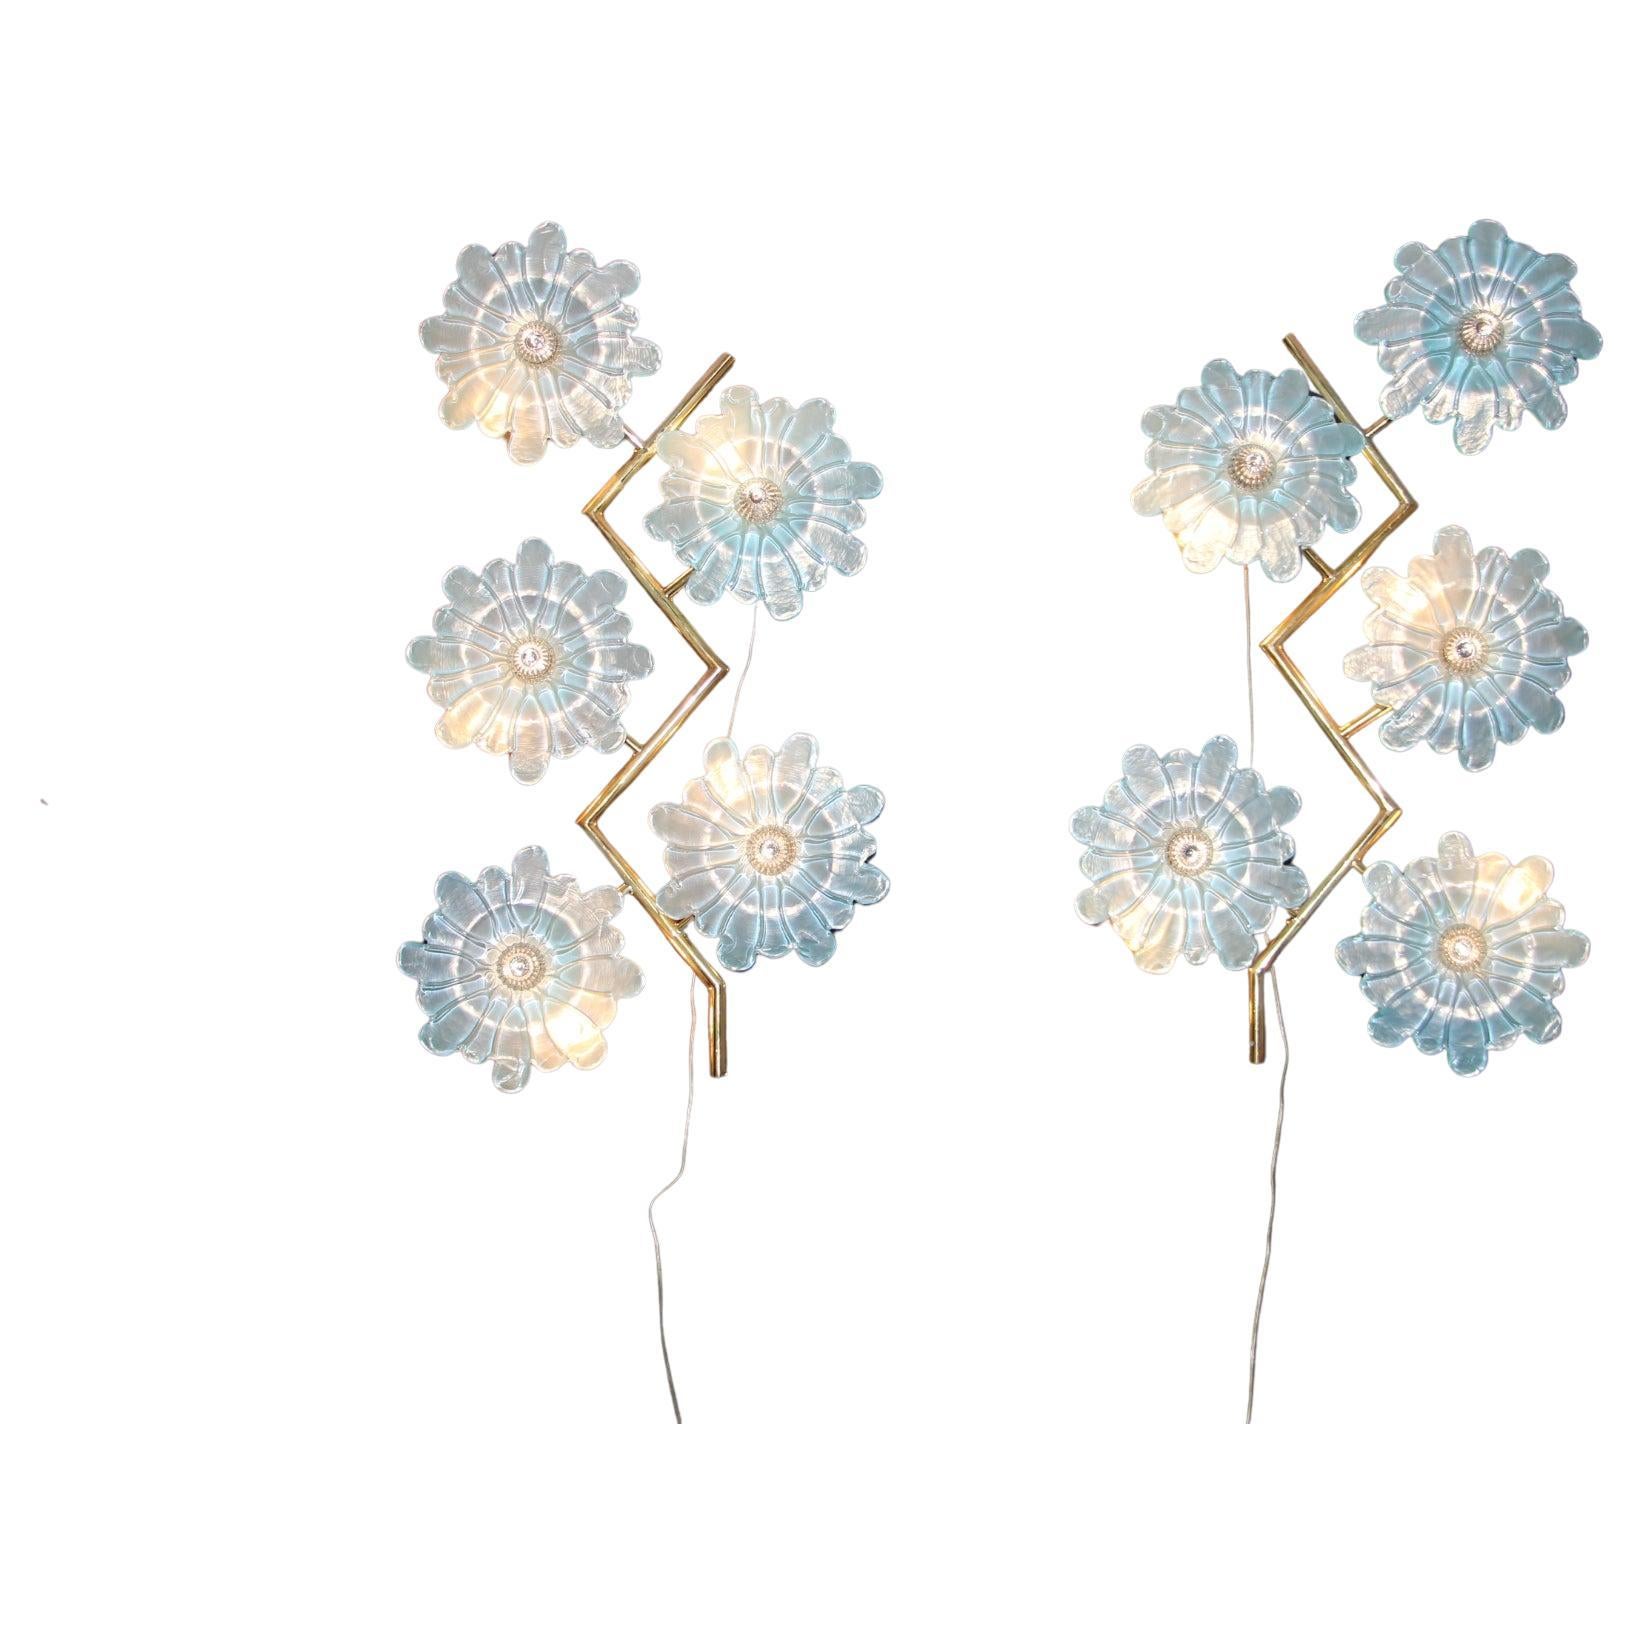 Cette belle paire d'appliques est composée d'un cadre en laiton en zigzag et de 5 fleurs en verre de Murano bleu irisé.Ces fleurs ont été fabriquées à la main à Murano et leur pièce centrale est constituée de clous en verre de couleur cristal.Elles